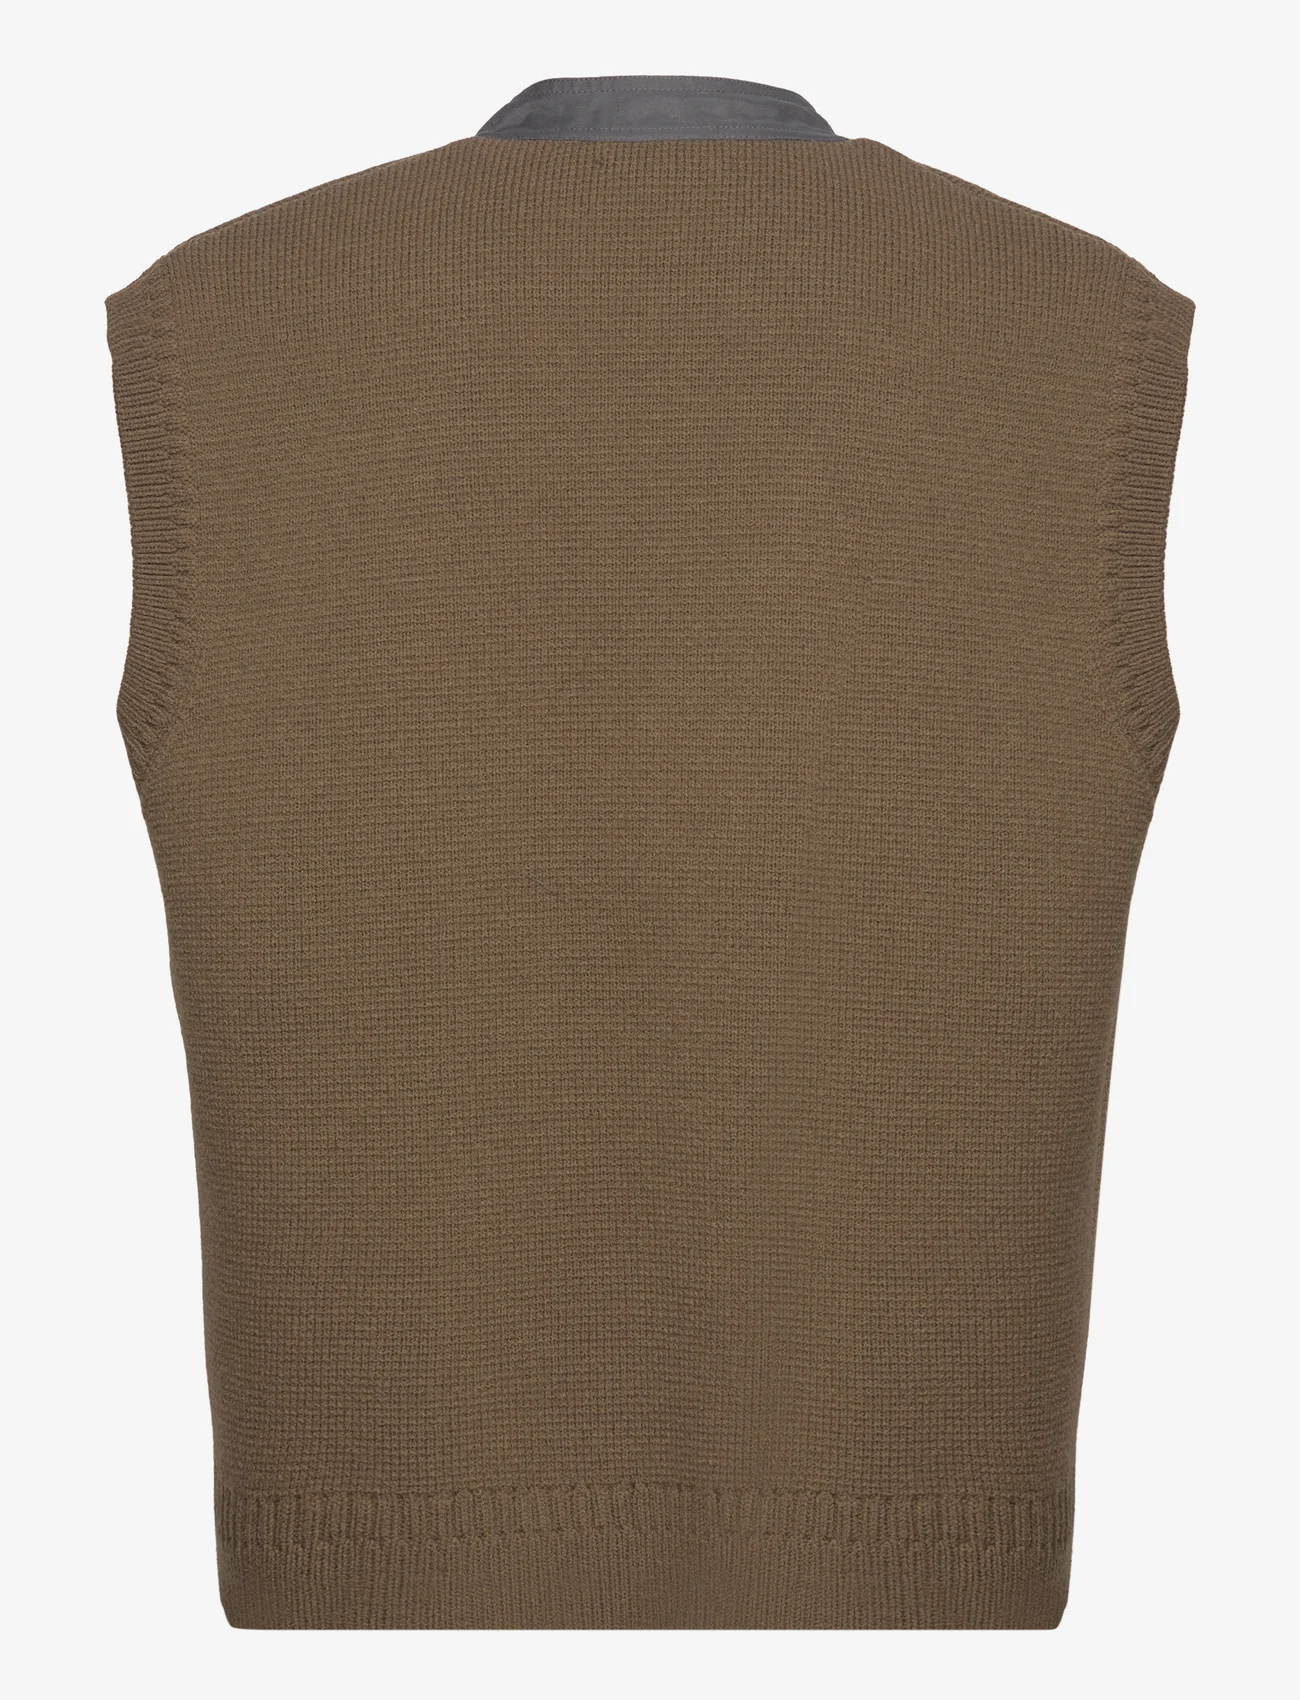 Hope - Merino Wool Sweater Vest - knitted vests - dark khaki - 1